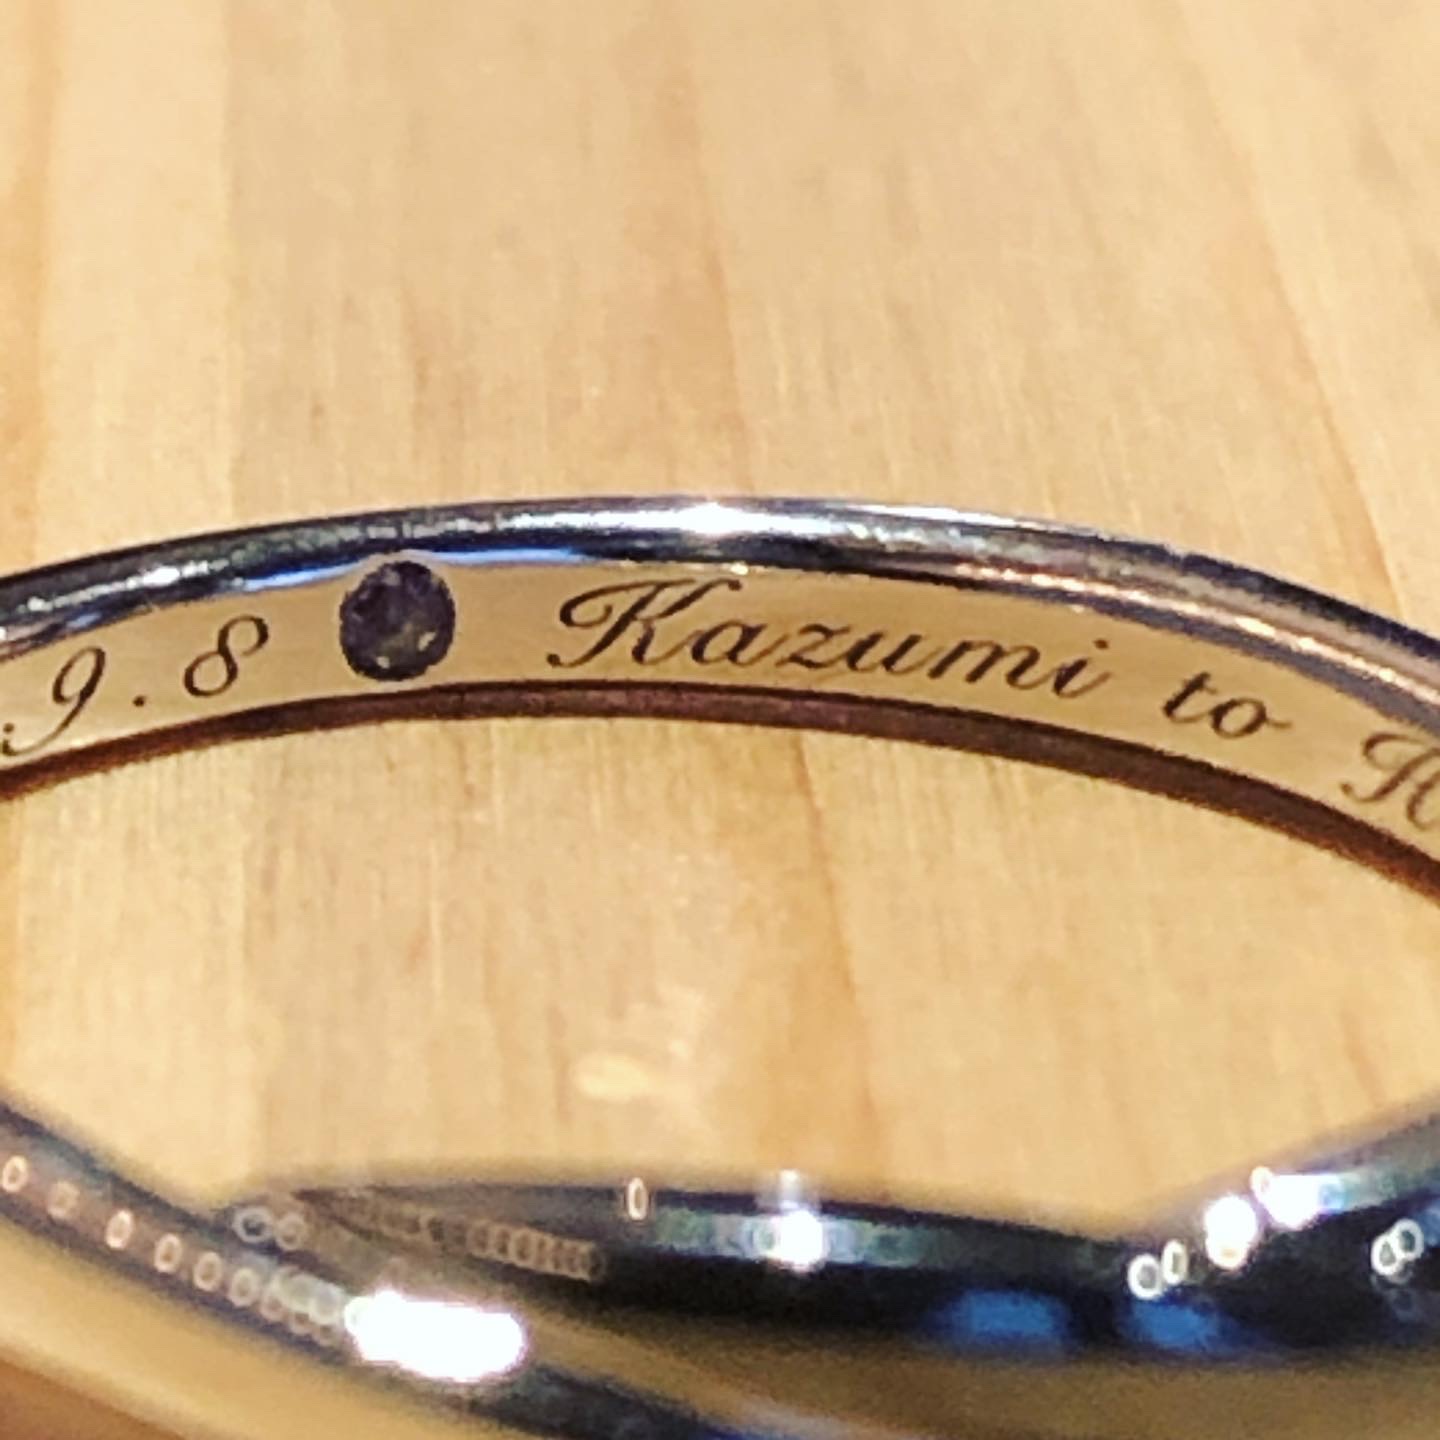 結婚指輪や婚約指輪の刻印もオシャレに 豊橋の結婚指輪 豊橋の婚約指輪 専門店ホメミ 豊橋市 豊川市